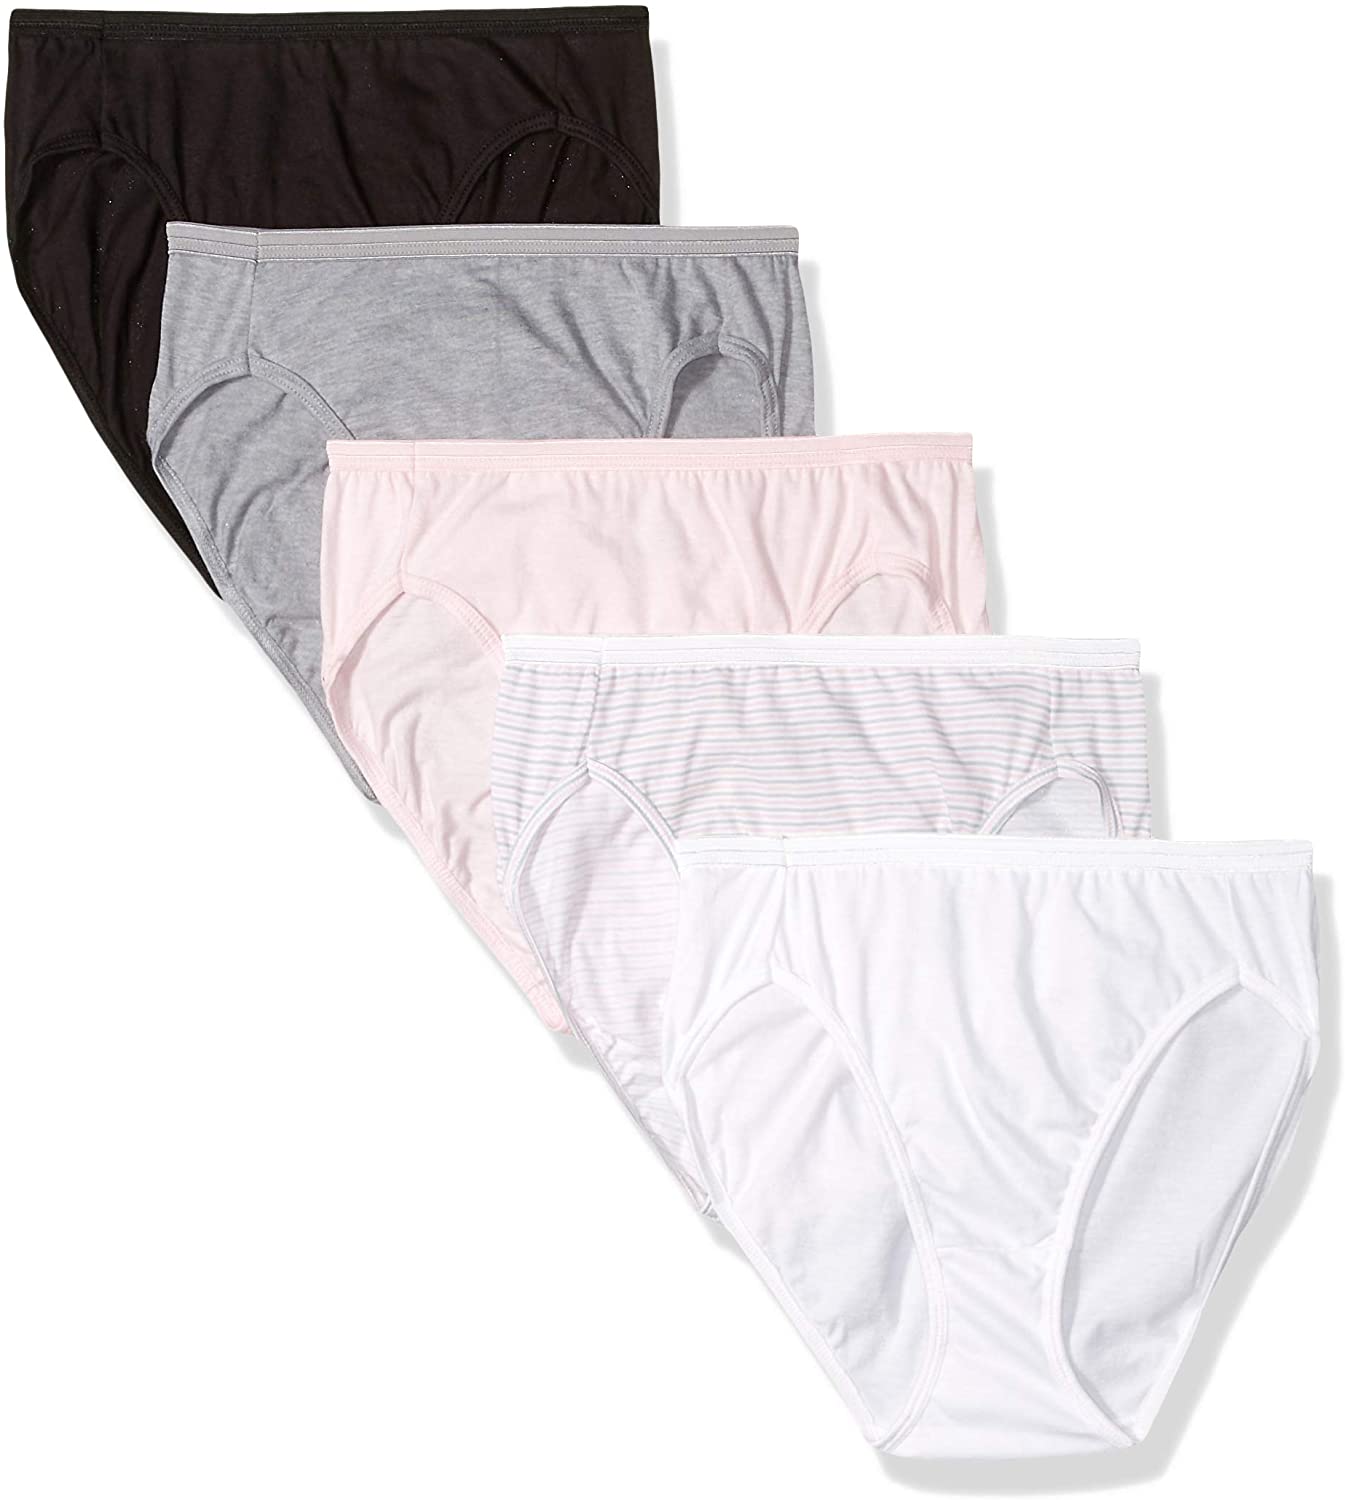 Hanes Cool Comfort Women's Cotton Hi-Cut Panties 6 Pack - PP43WB